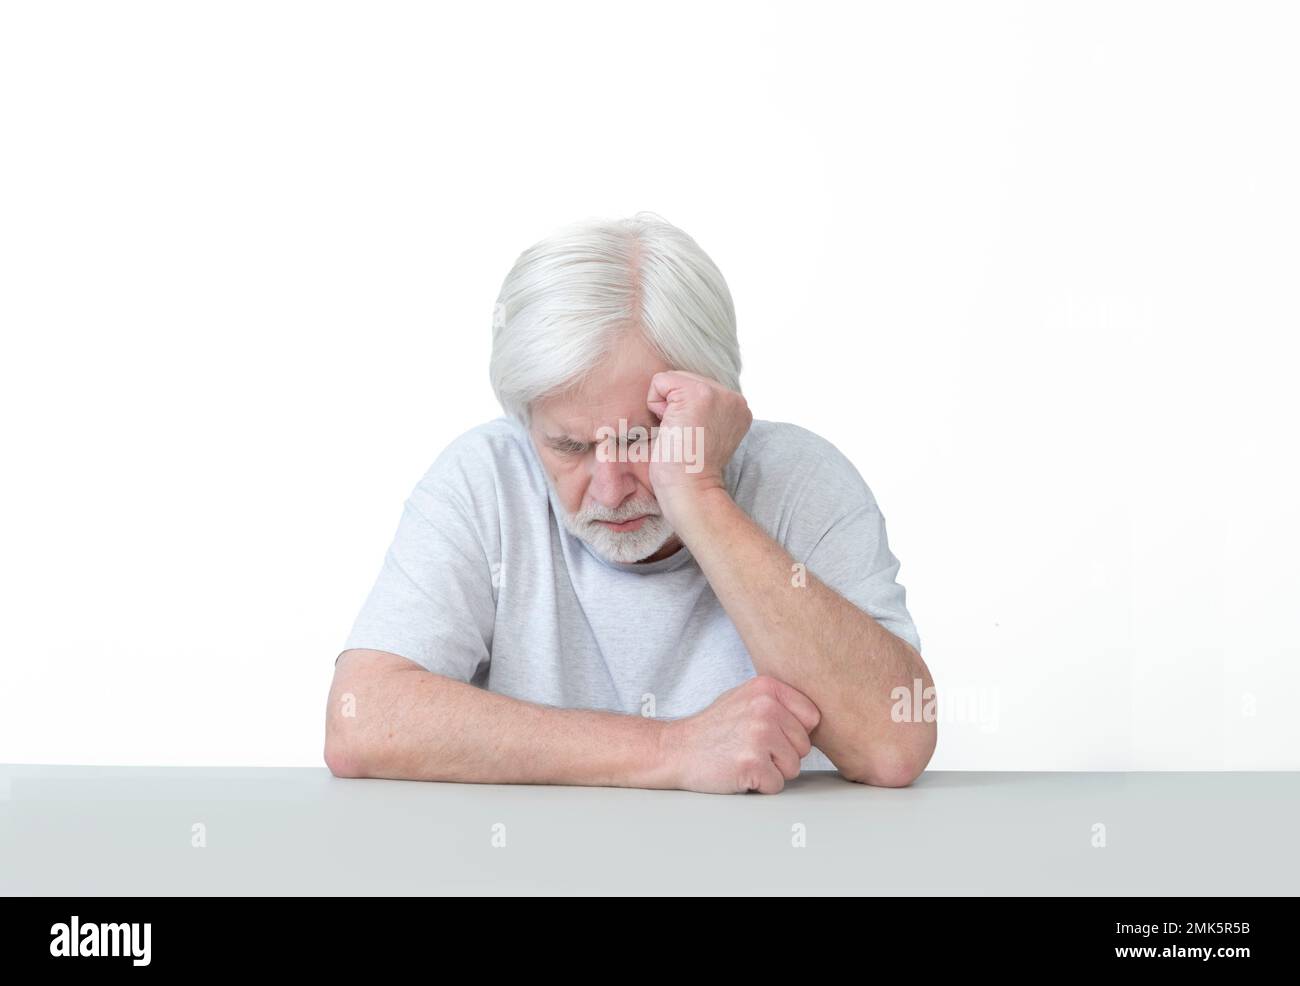 Horizontale Aufnahme eines müden alten Mannes, der an einem Tisch schläft und seinen Kopf an die Hand lehnt. Isoliert auf weiß. Viel Platz zum Kopieren. Stockfoto